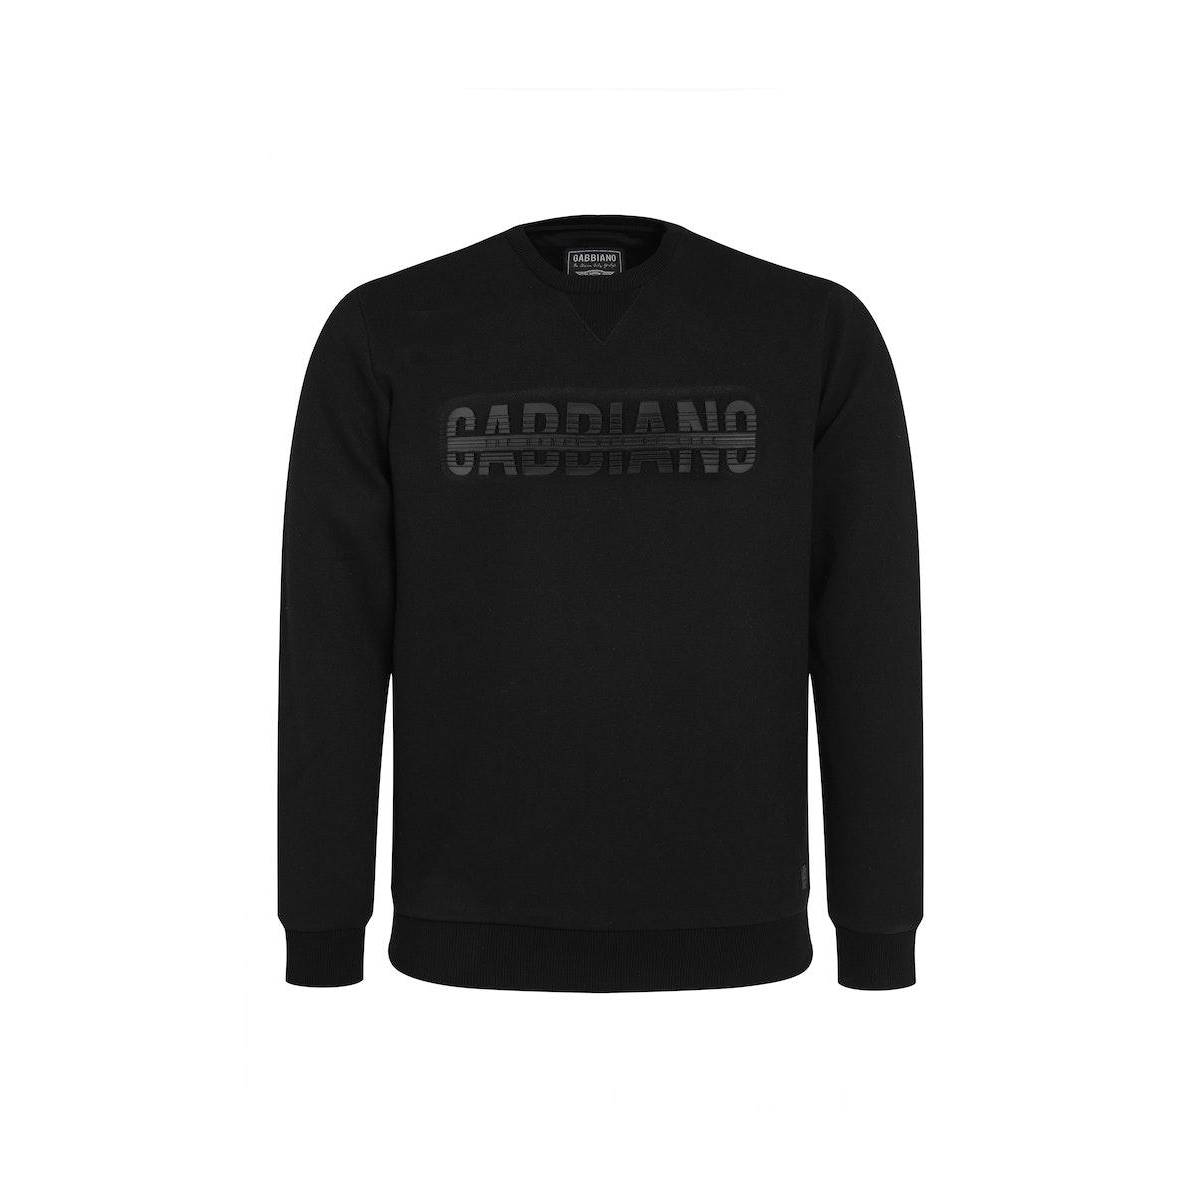 Gabbiano Sweater Zwart